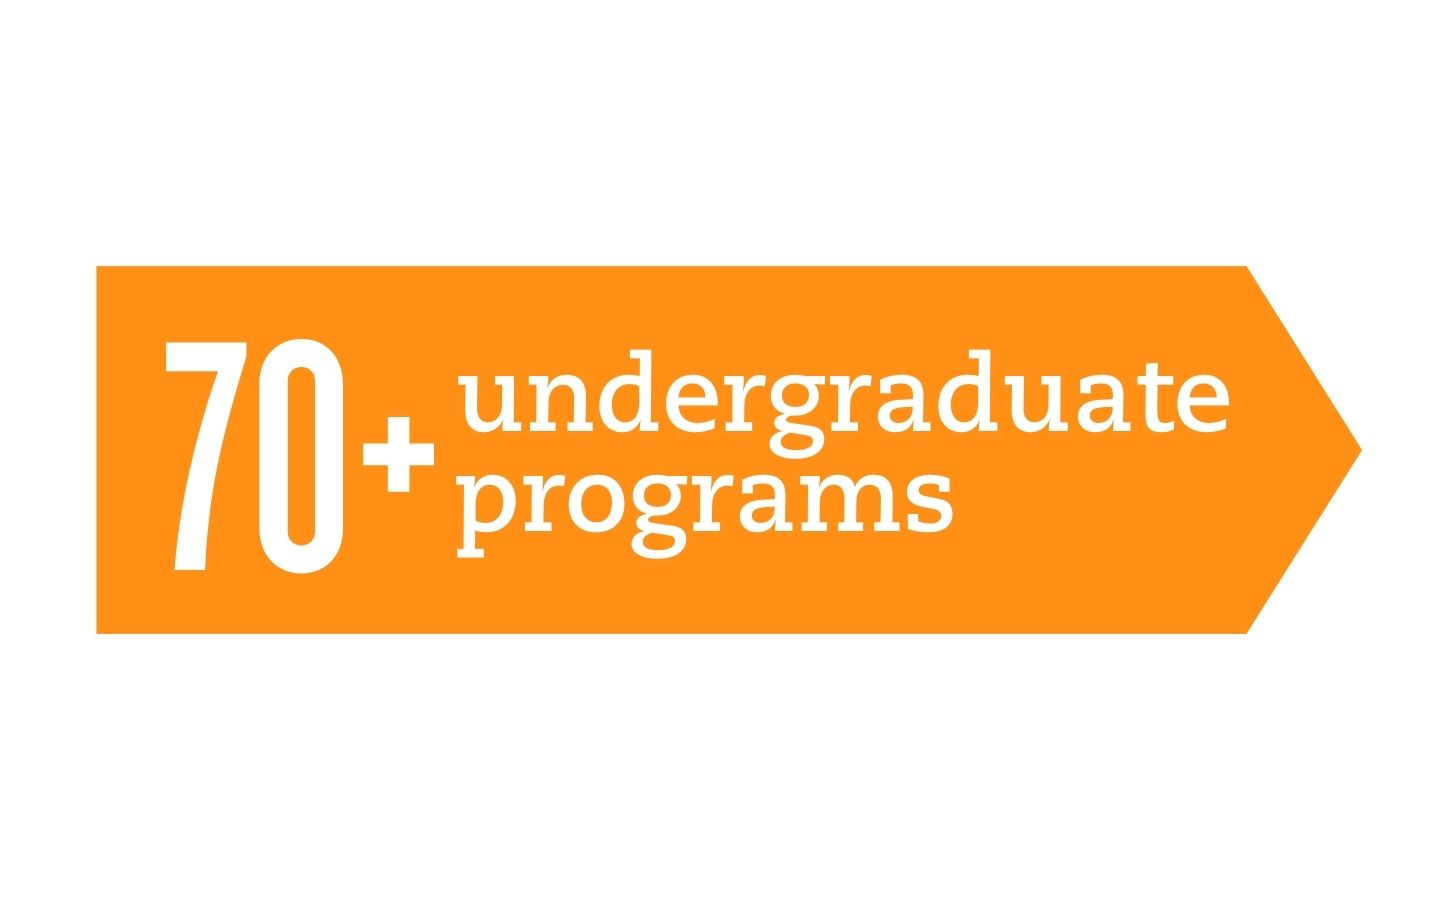 70 plus undergraduate programs infographic